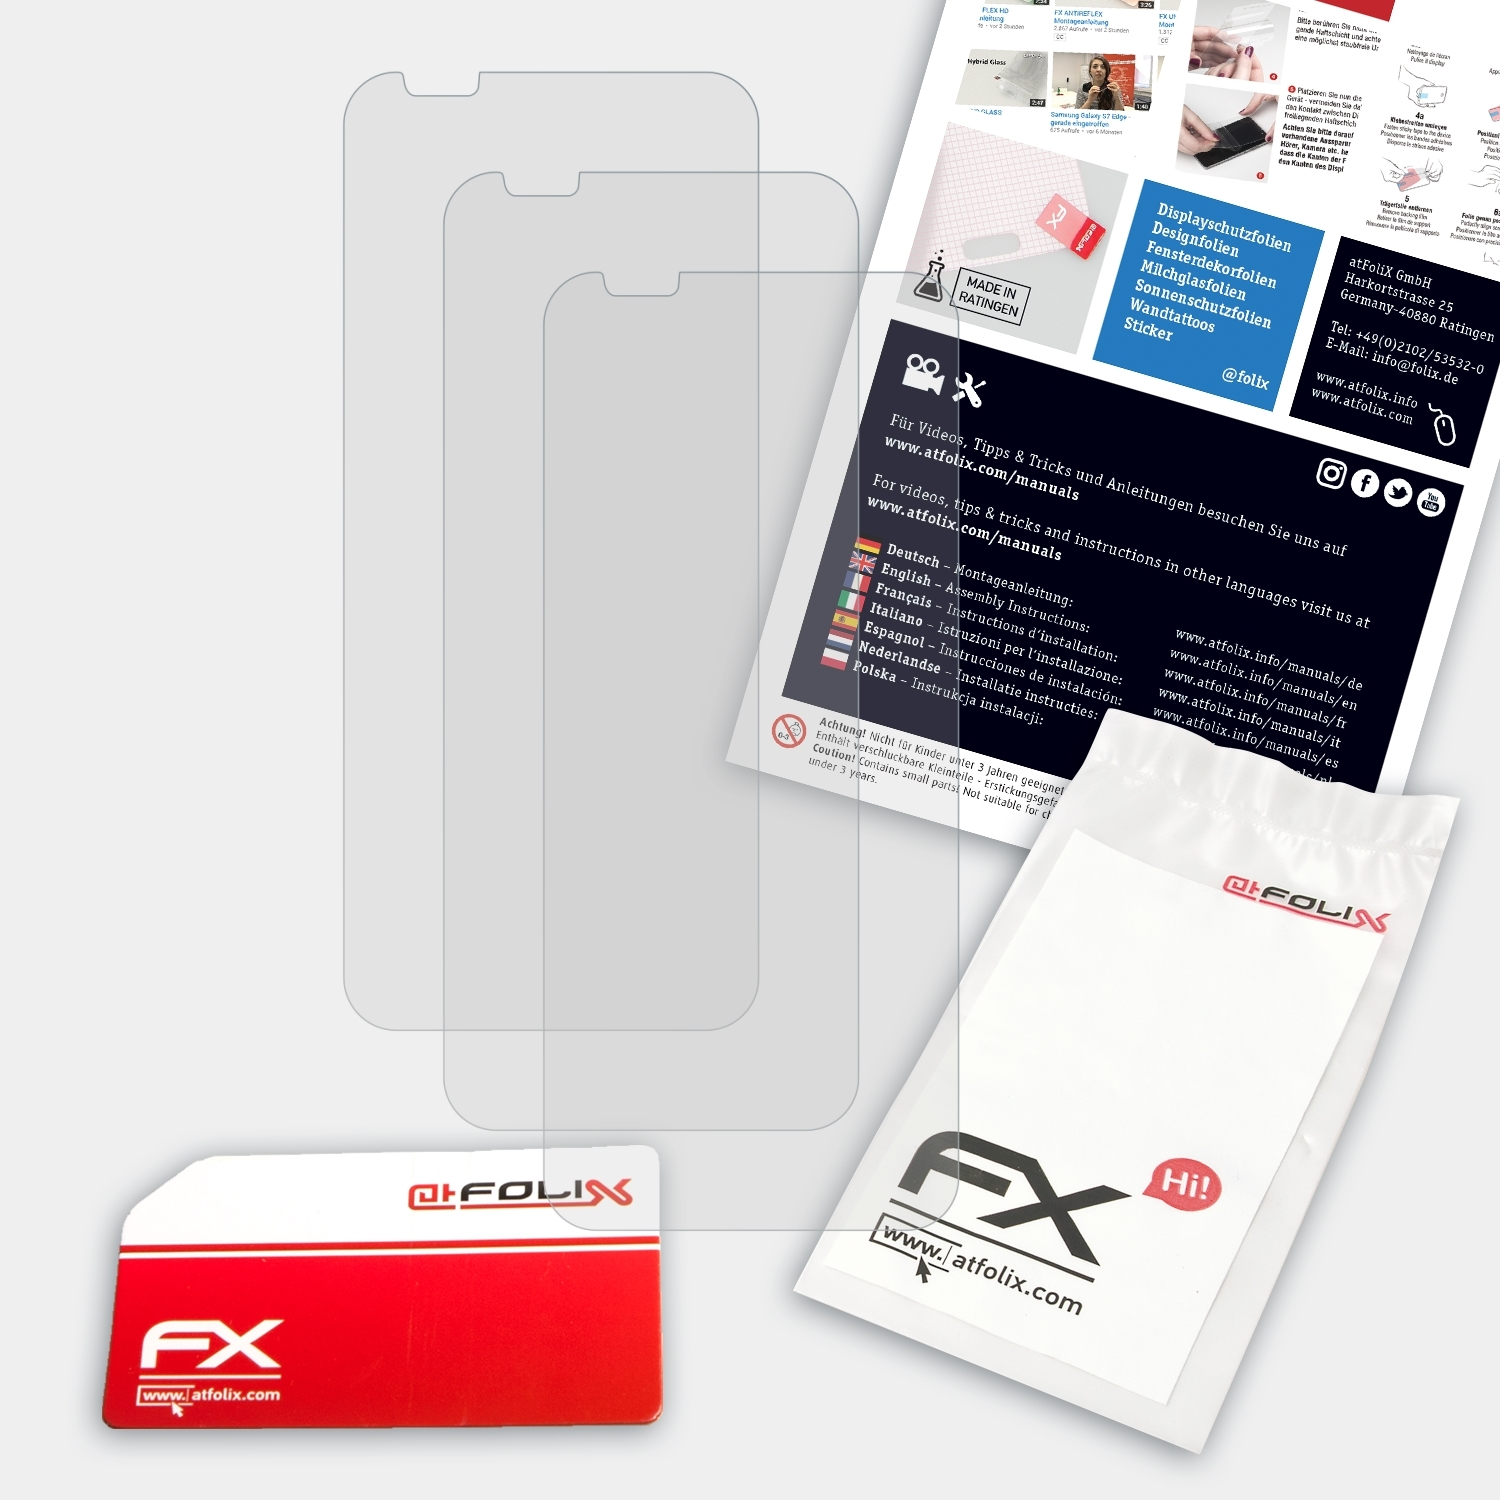 ATFOLIX 3x FX-Antireflex Magic ZTE Red Displayschutz(für Nubia 3)